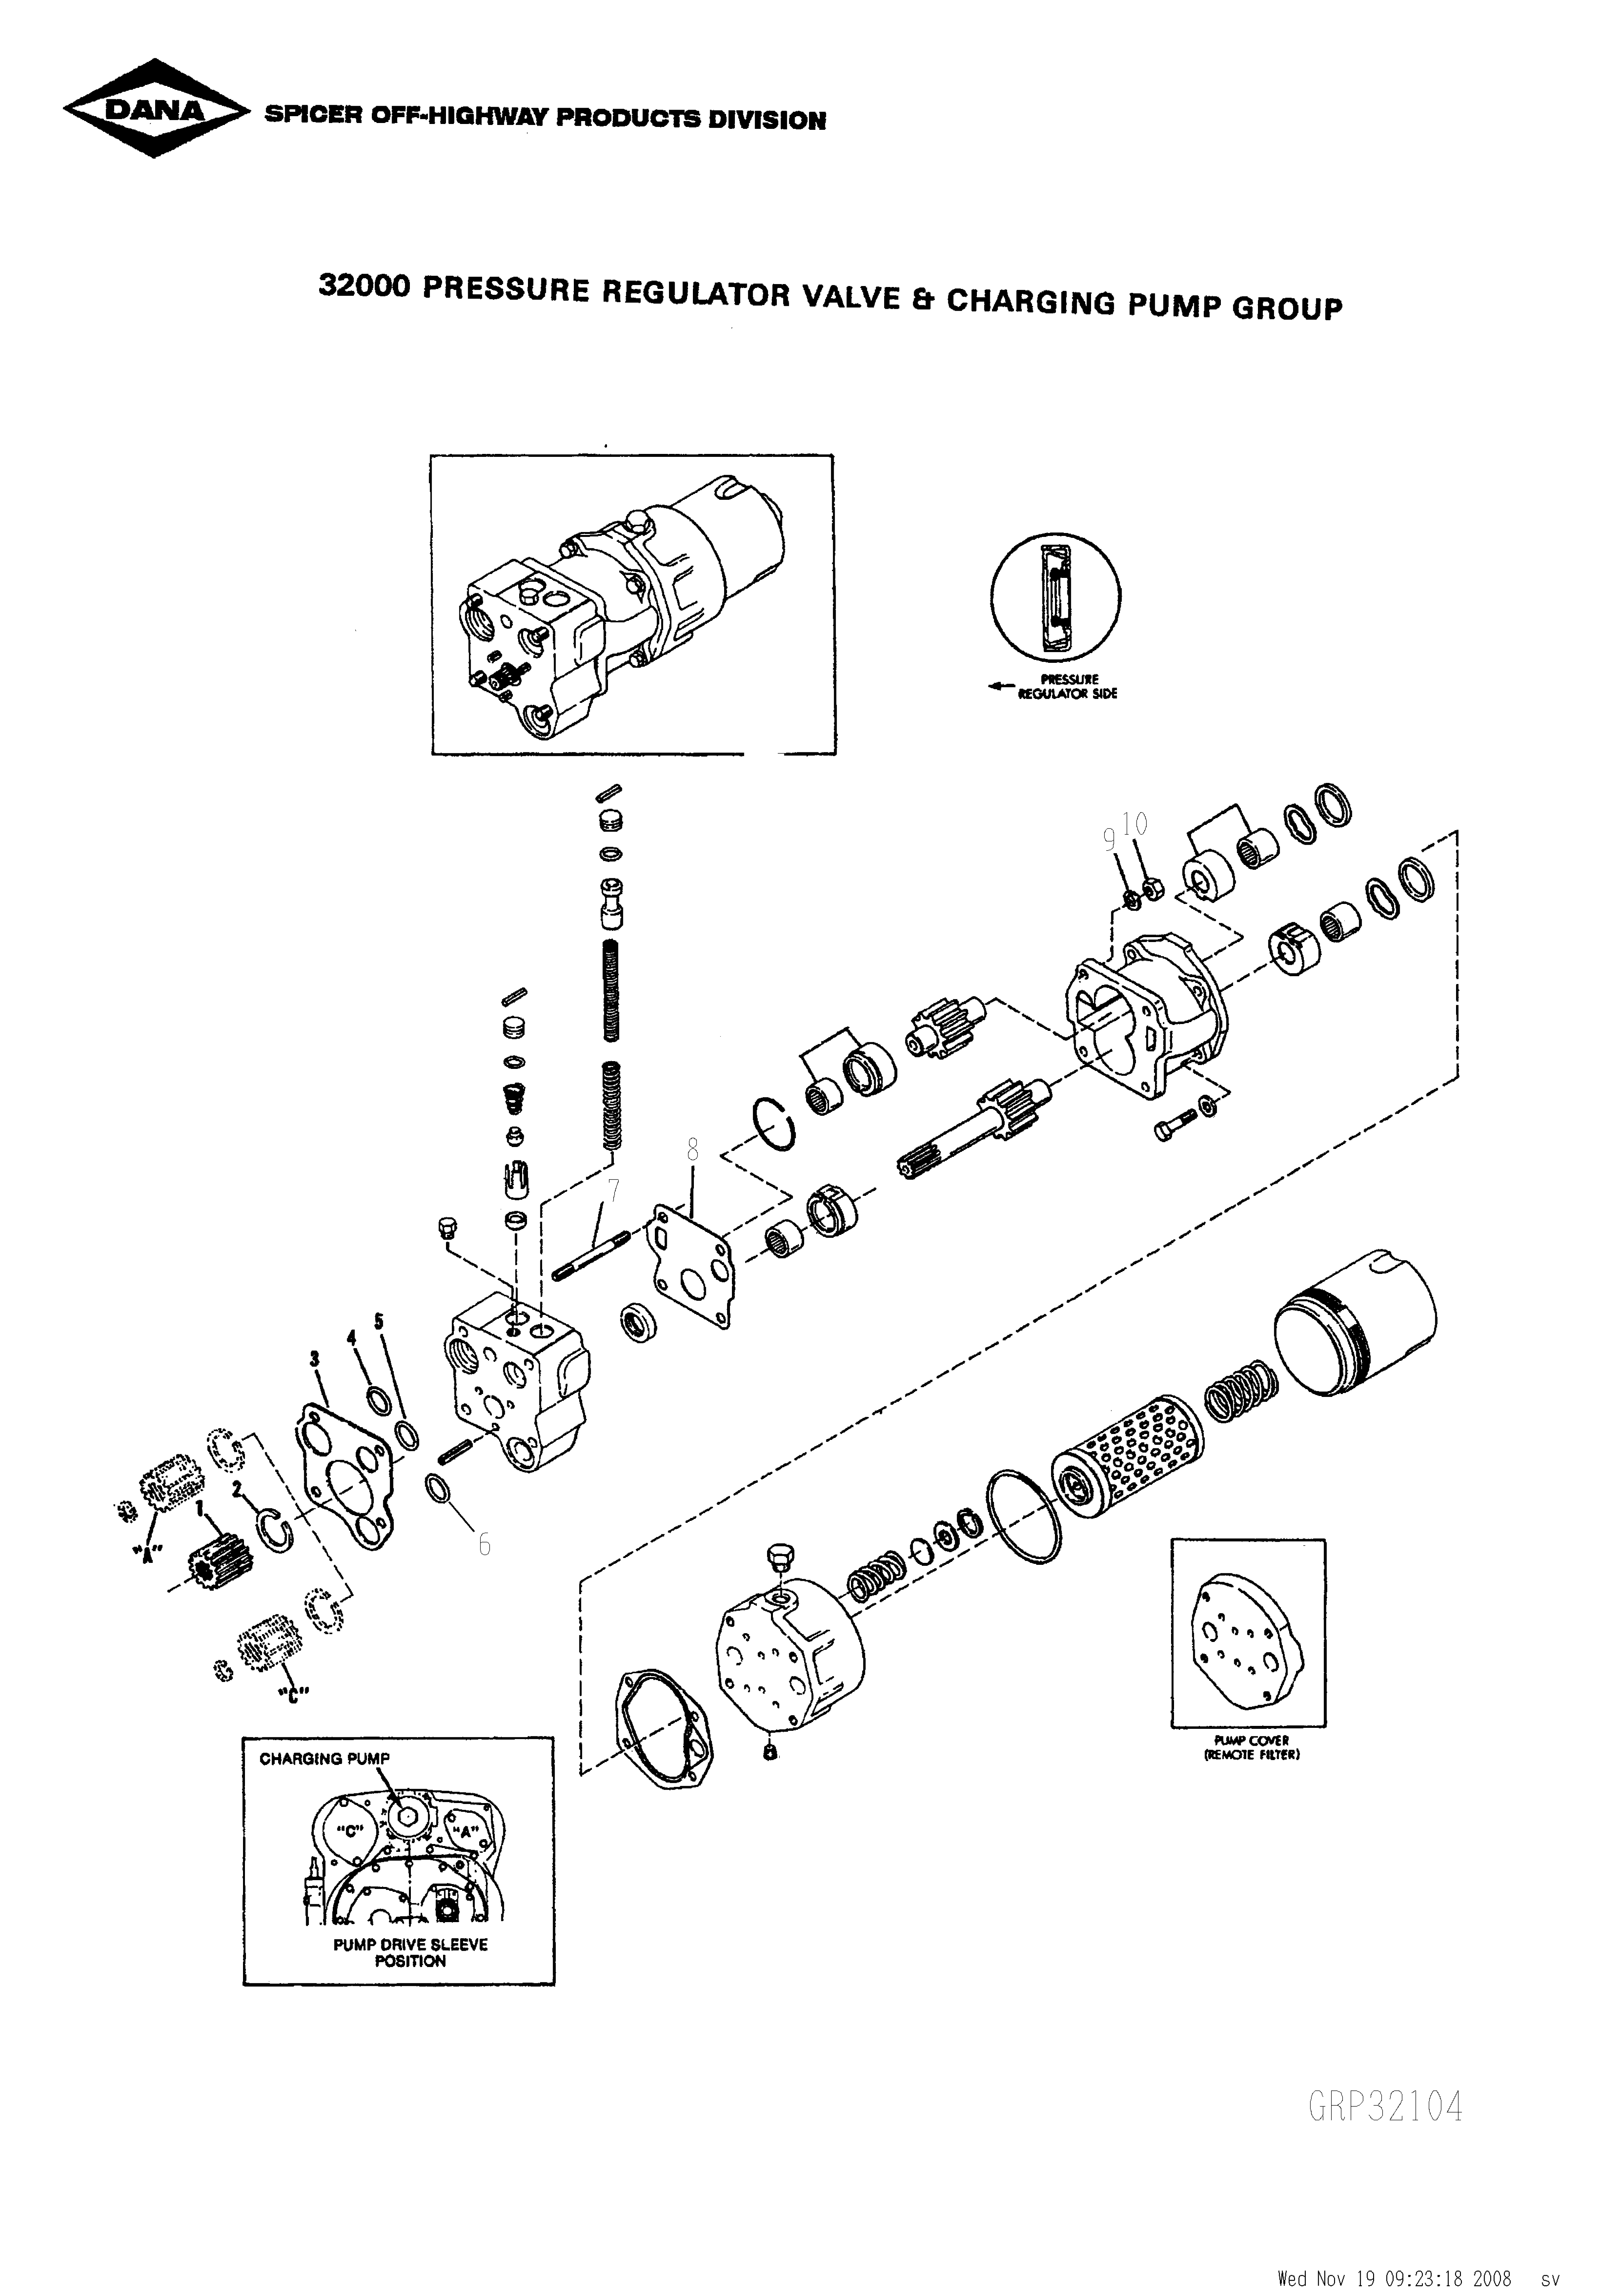 drawing for SCHOEMA, SCHOETTLER MASCHINENFABRIK K24.000054 - O RING (figure 1)